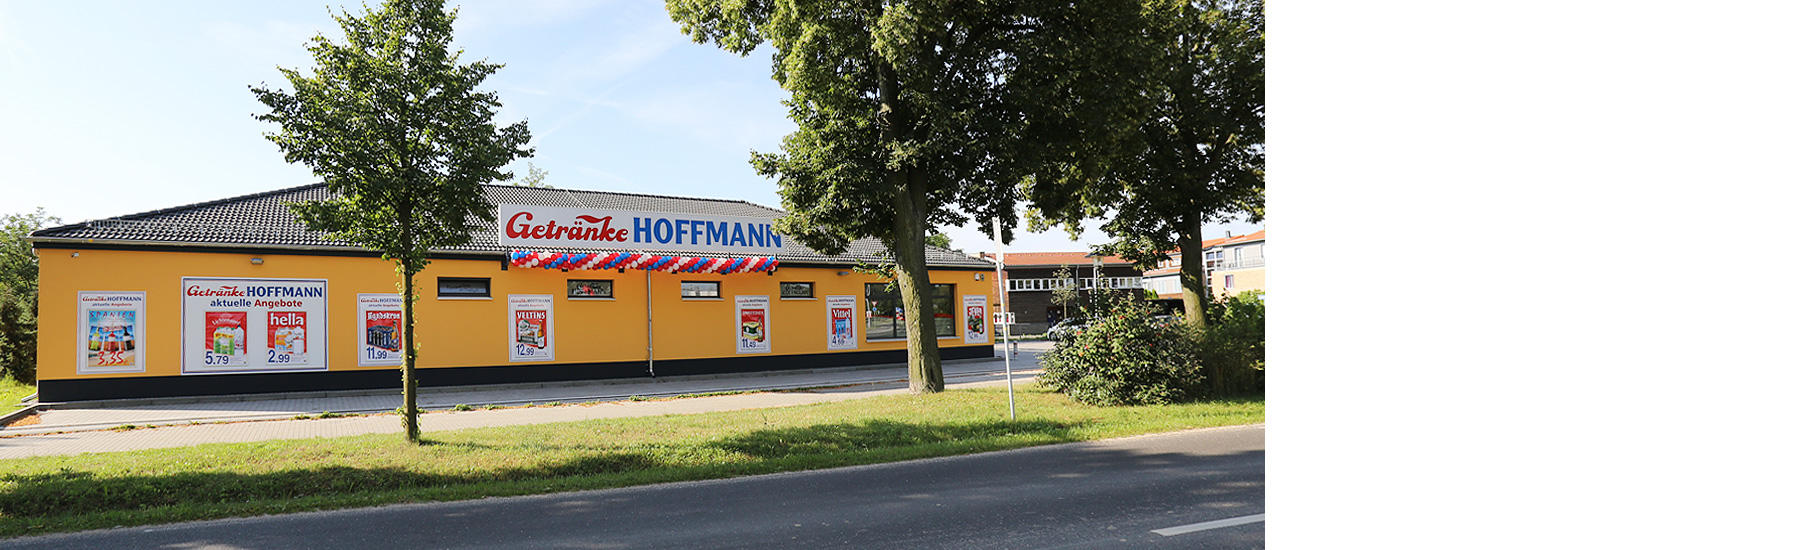 Bild 1 Getränke Hoffmann in Groß Glienicke